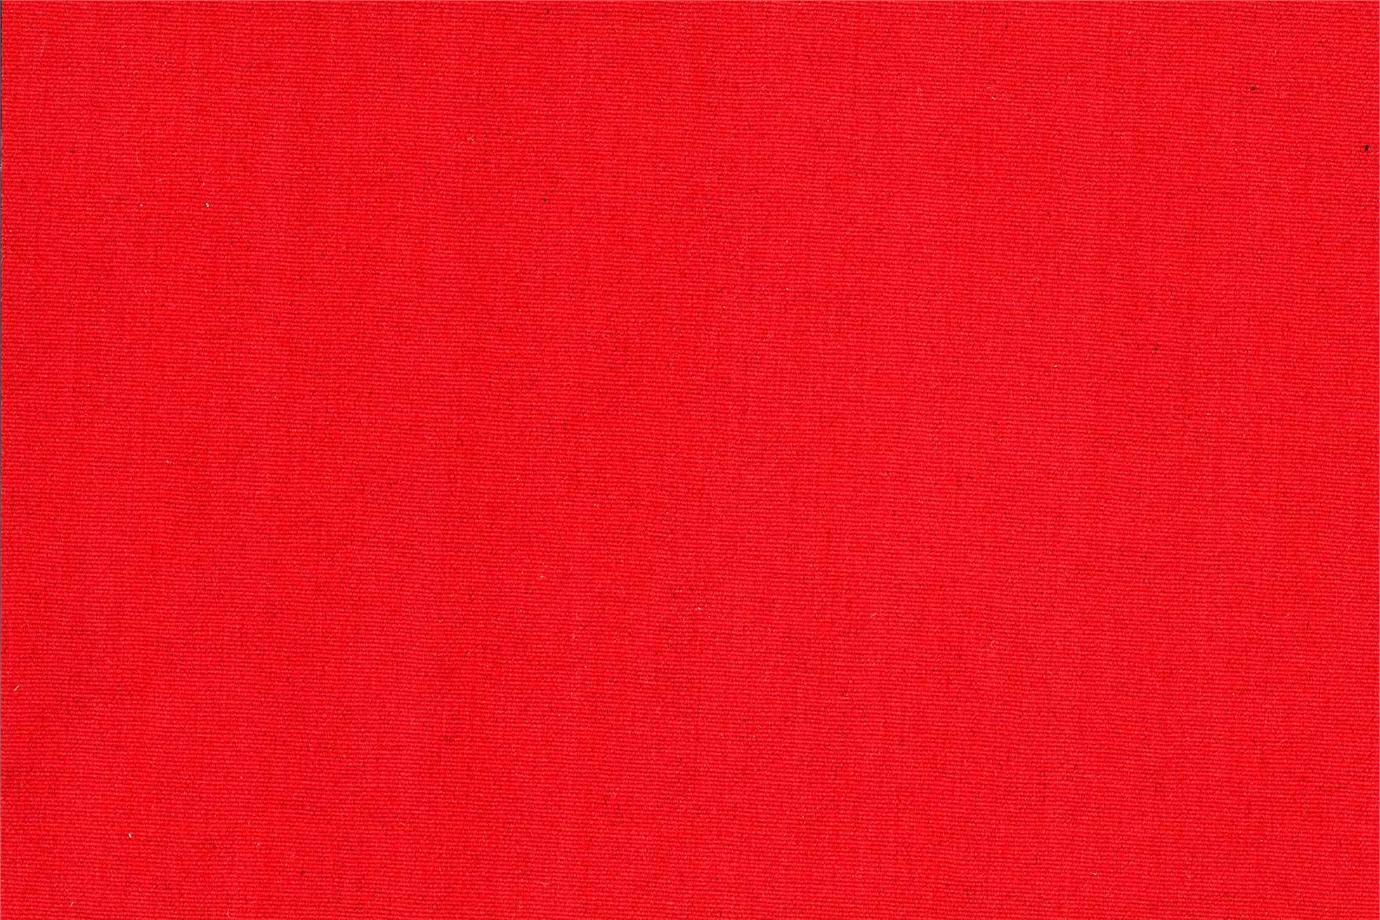 J1843 POGGIOREALE 027 Rosso home decoration fabric